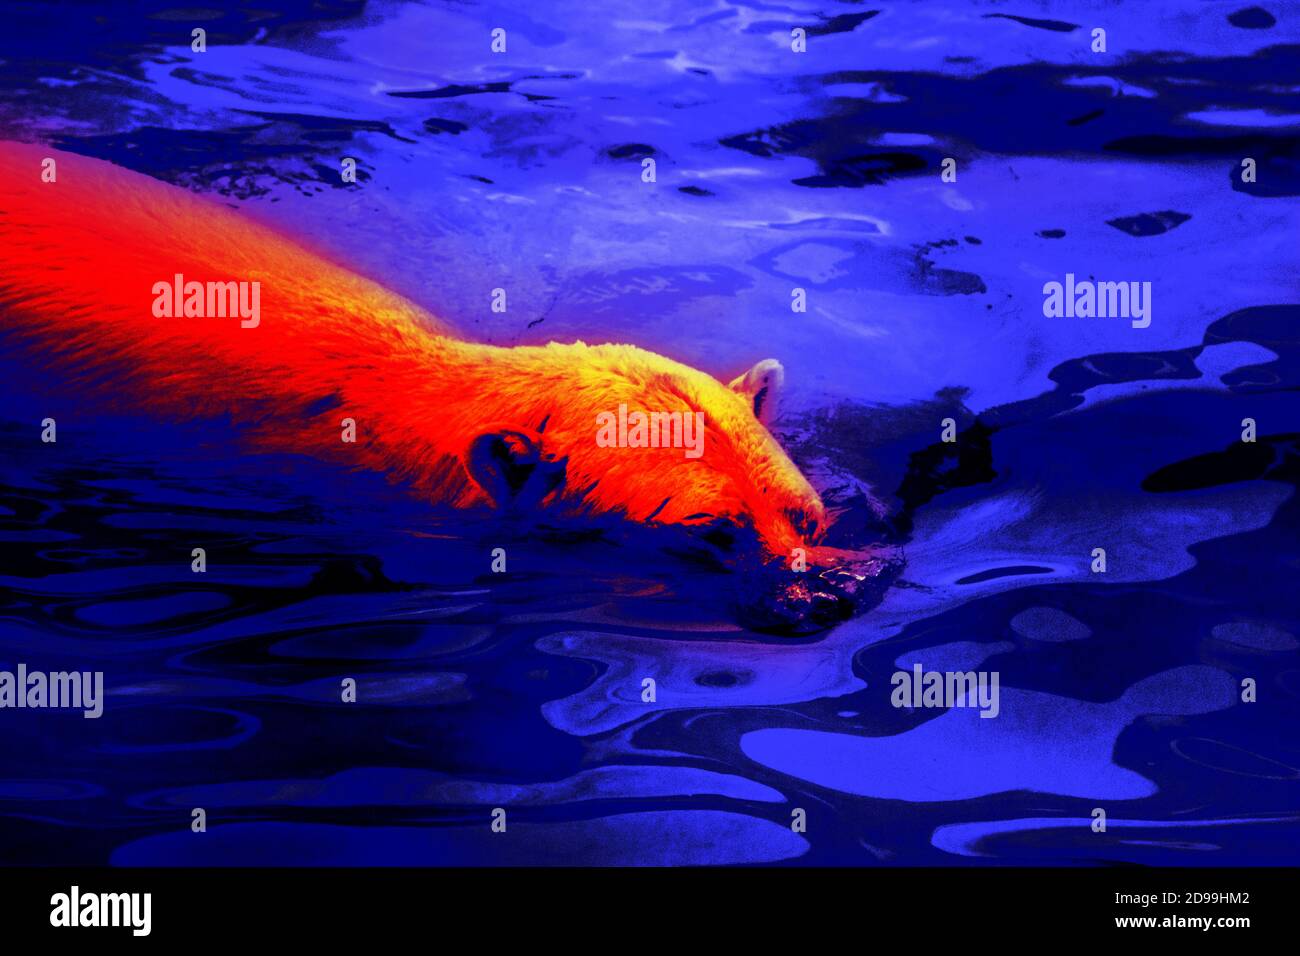 Eisbär in wissenschaftlicher High-Tech-Wärmebildkamera. Dieser Bär kann im  Wasser mit Temperatur Null oder minus zwei Grad (arktischer Ozean) Hunderte  von m schwimmen Stockfotografie - Alamy